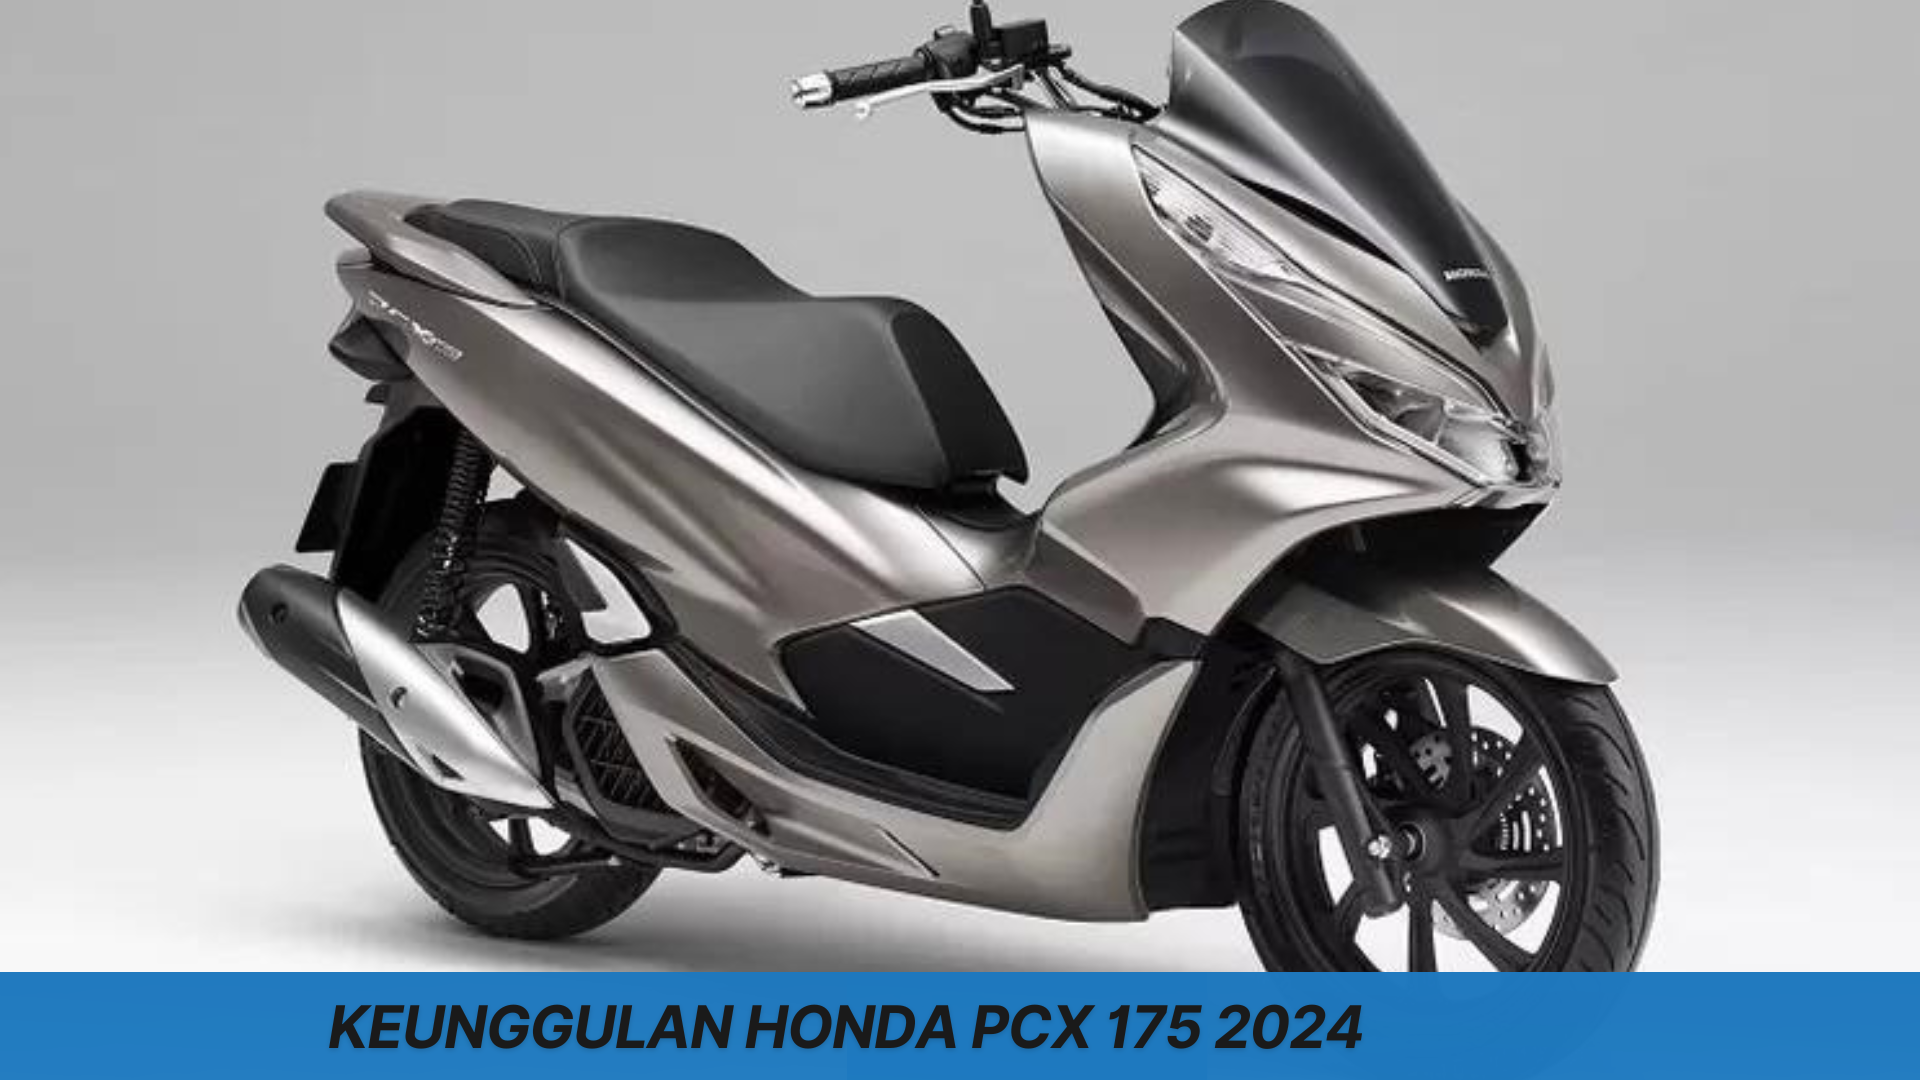 Keunggulan Honda PCX 175 2024 Hadir dengan Tampilan Super Agresif, Calon Pesaing Terberat Nmax 2024